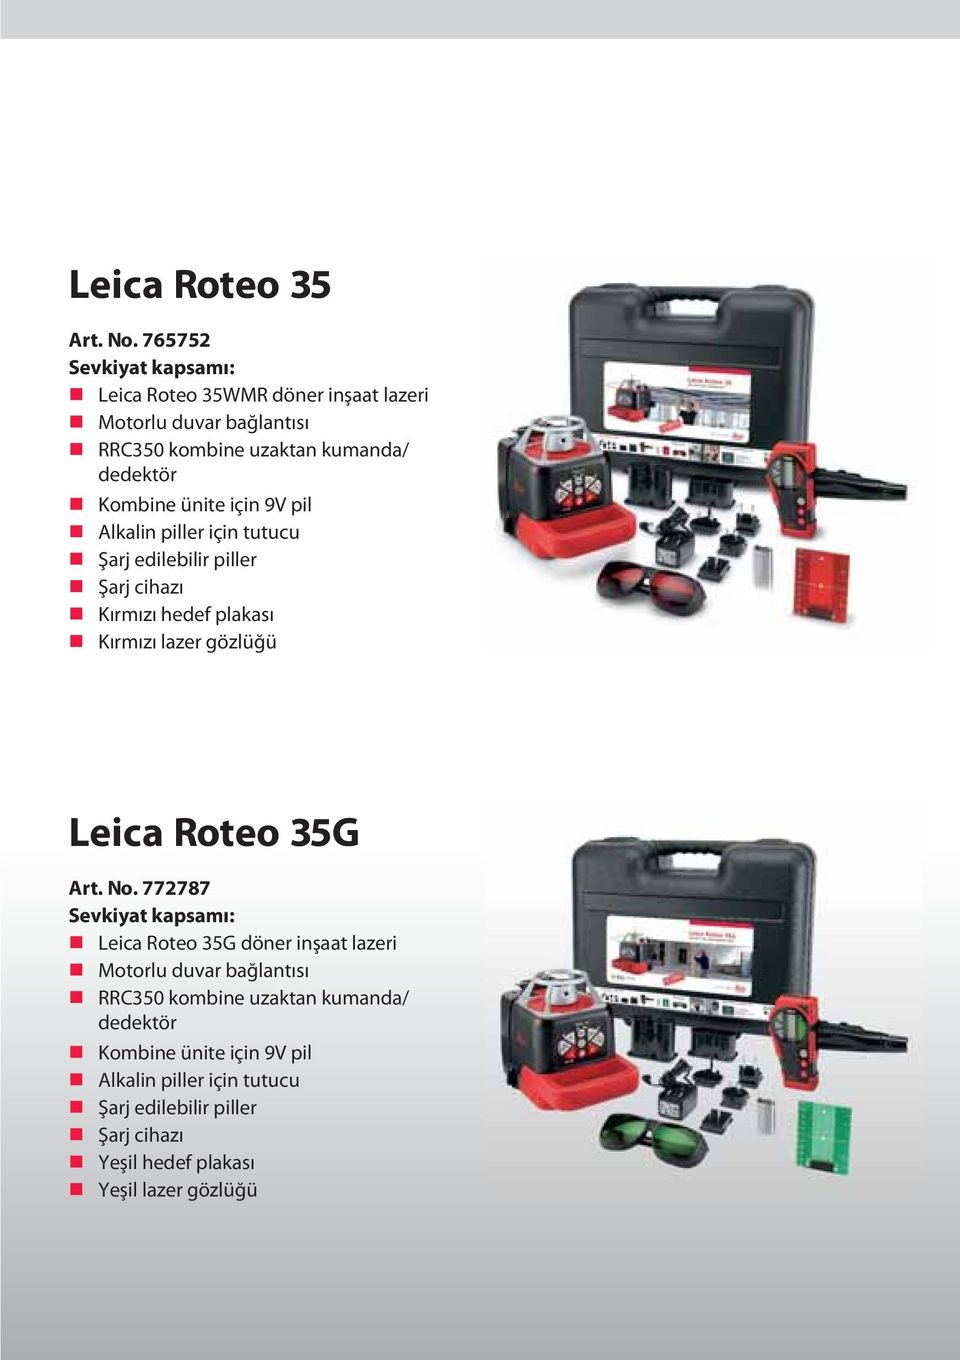 ünite için 9V pil Alkalin piller için tutucu Şarj edilebilir piller Şarj cihazı Kırmızı hedef plakası Kırmızı lazer gözlüğü Leica Roteo 35G